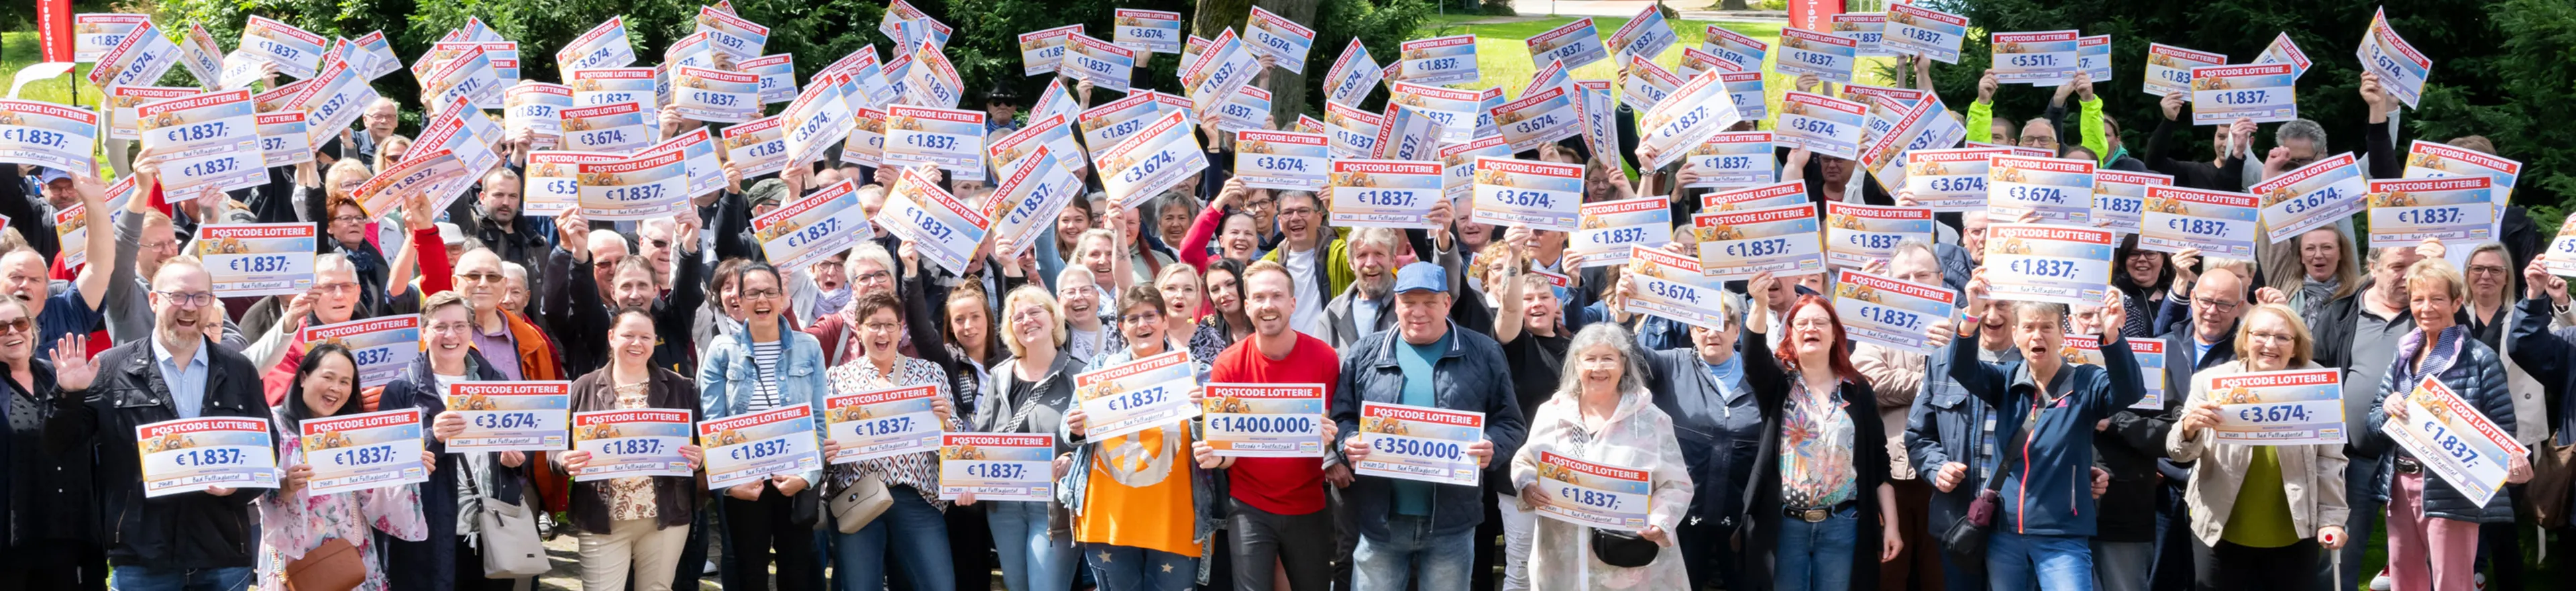 Die Monatsgewinner der Deutschen Postcode Lotterie jubeln über insgesamt 1,4 Millionen Euro